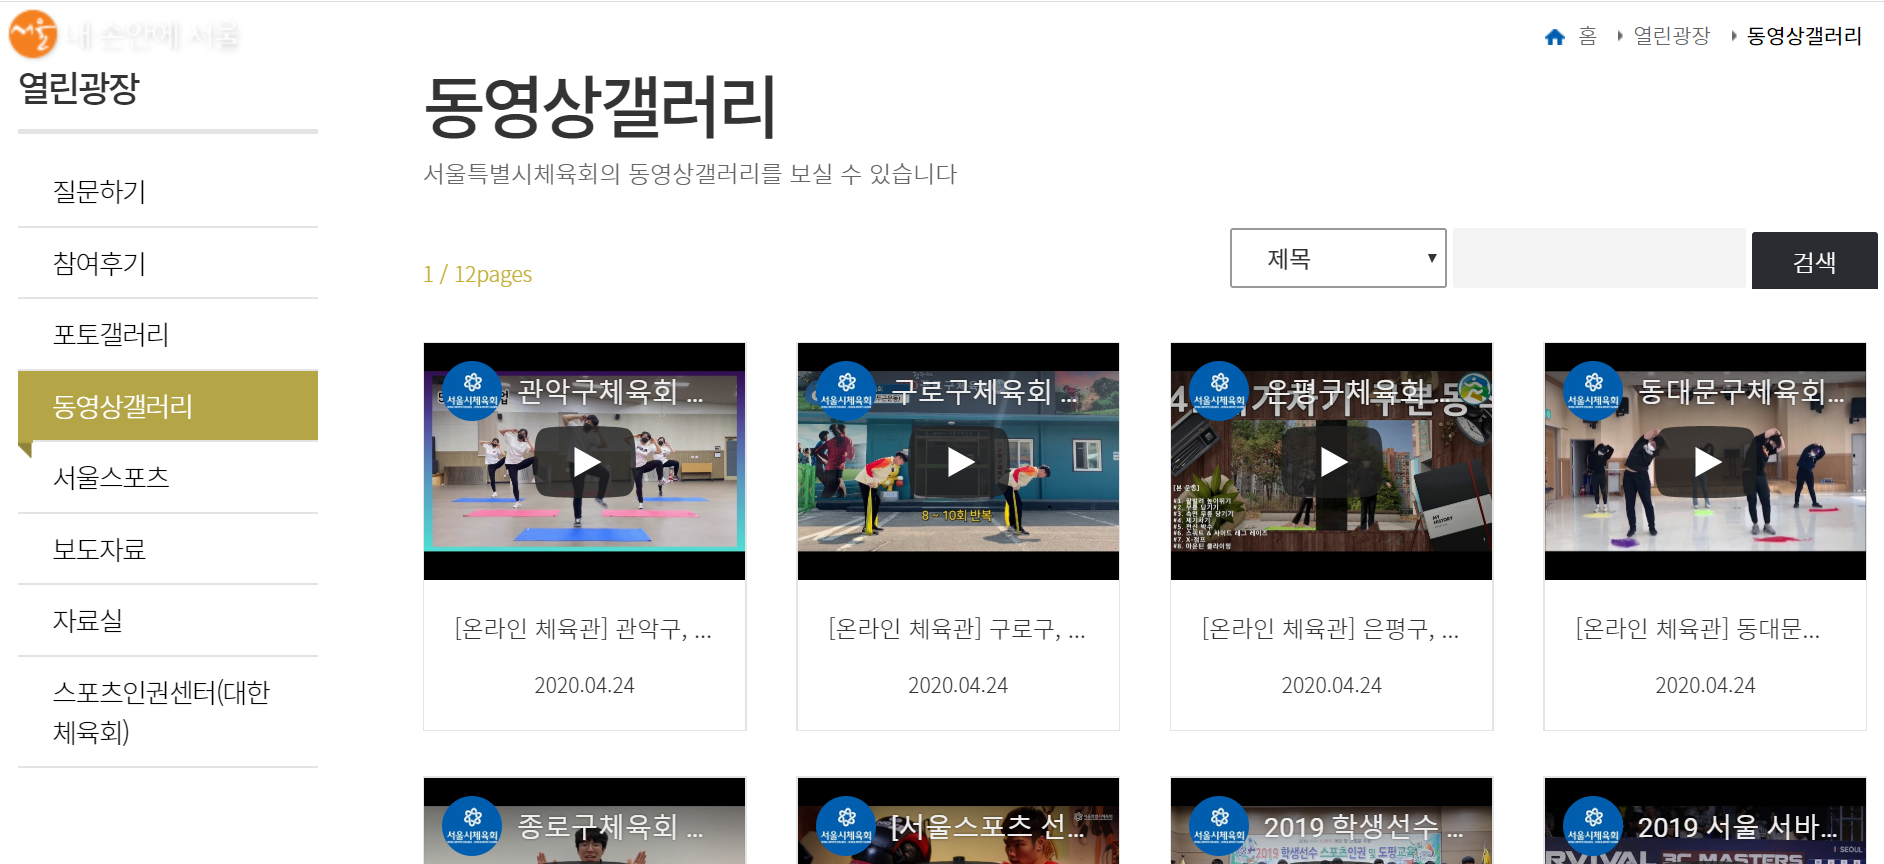 25개 자치구가 참여한 서울특별시 체육회 홈페이지에 게시되어 있는 홈 트레이닝 영상들